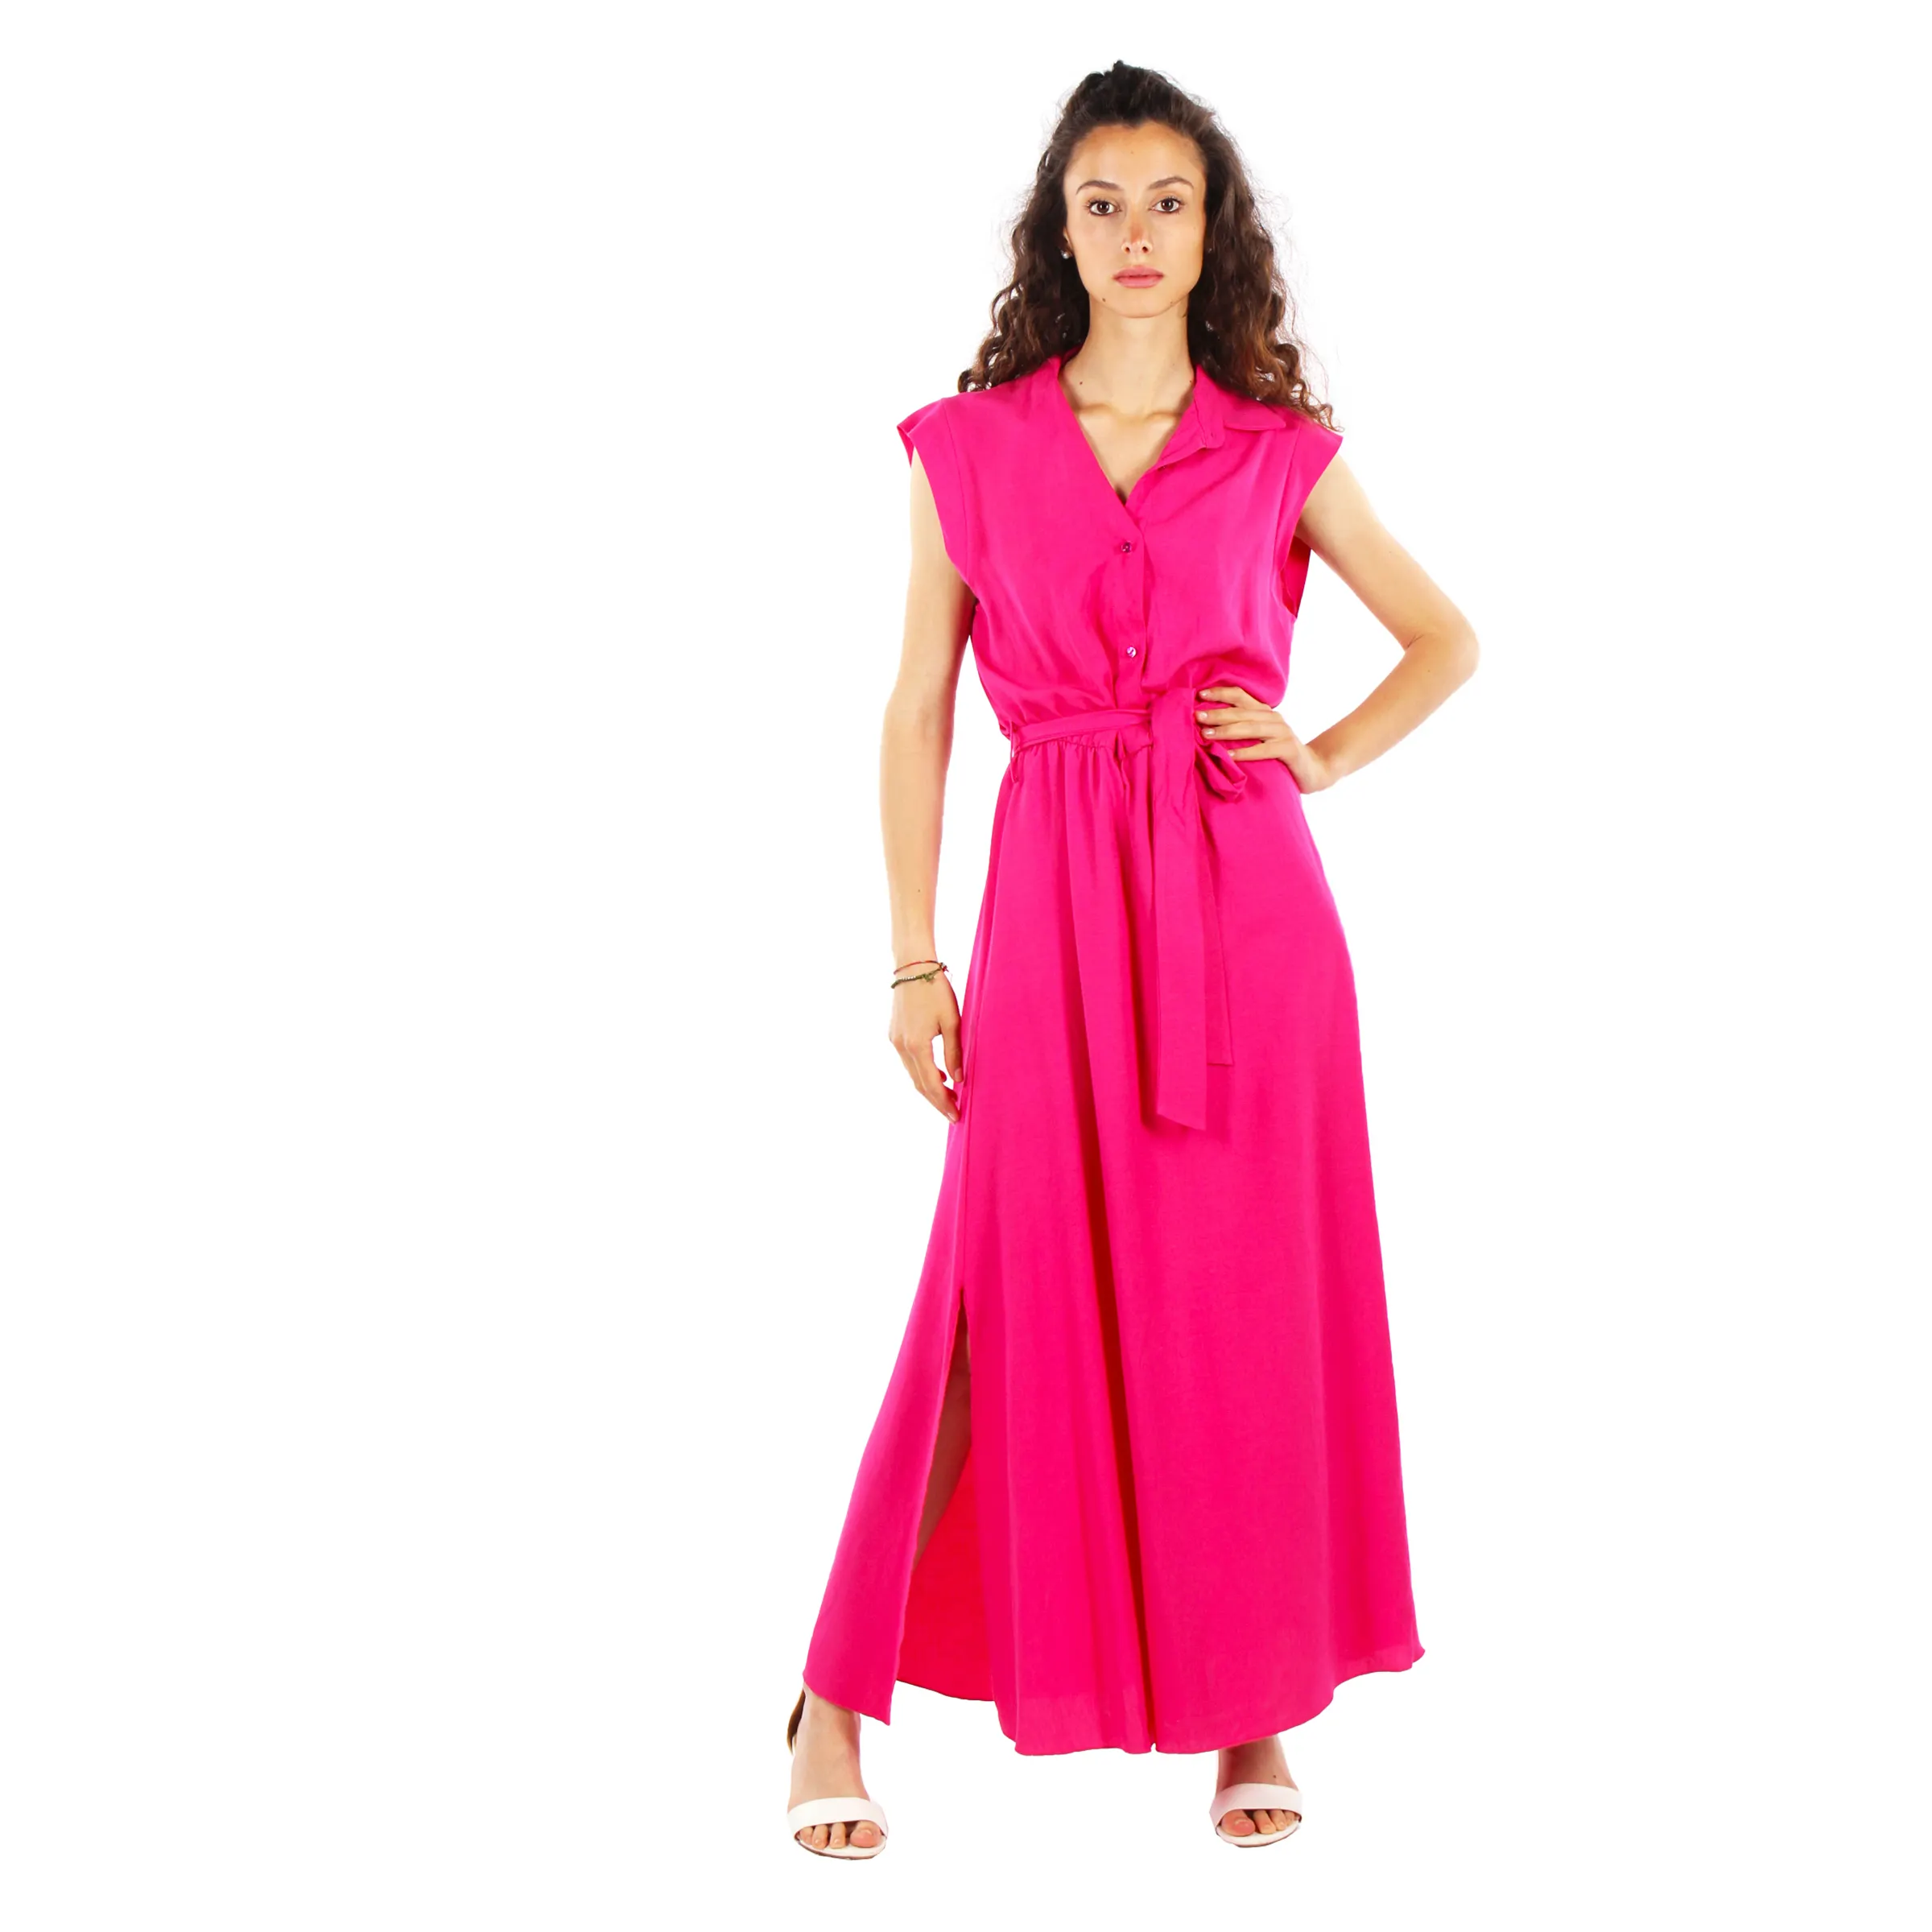 Mutiges und schönes Fuchsia Chemisier Viskose-Leinen kleid mit Gürtel in Vibrant Pink für Daytaime Party größe groß